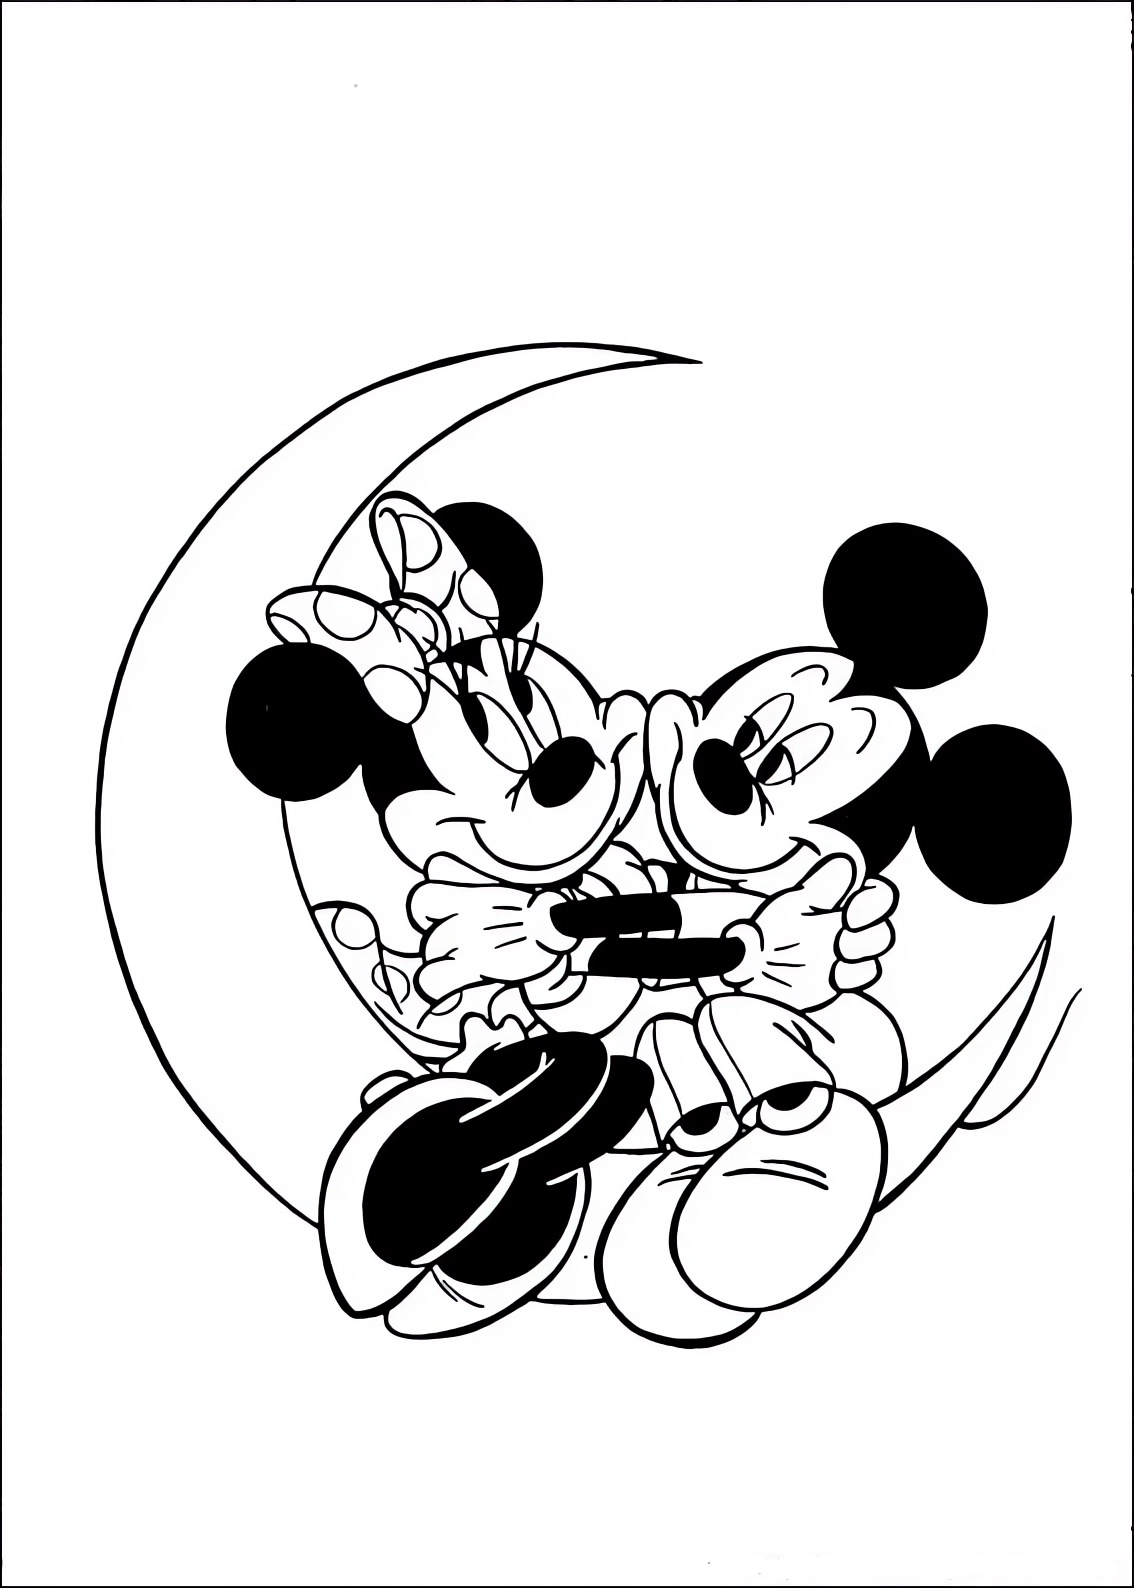 Disegno da colorare di Minnie e Topolino (Mickey Mouse) innamorati sulla luna